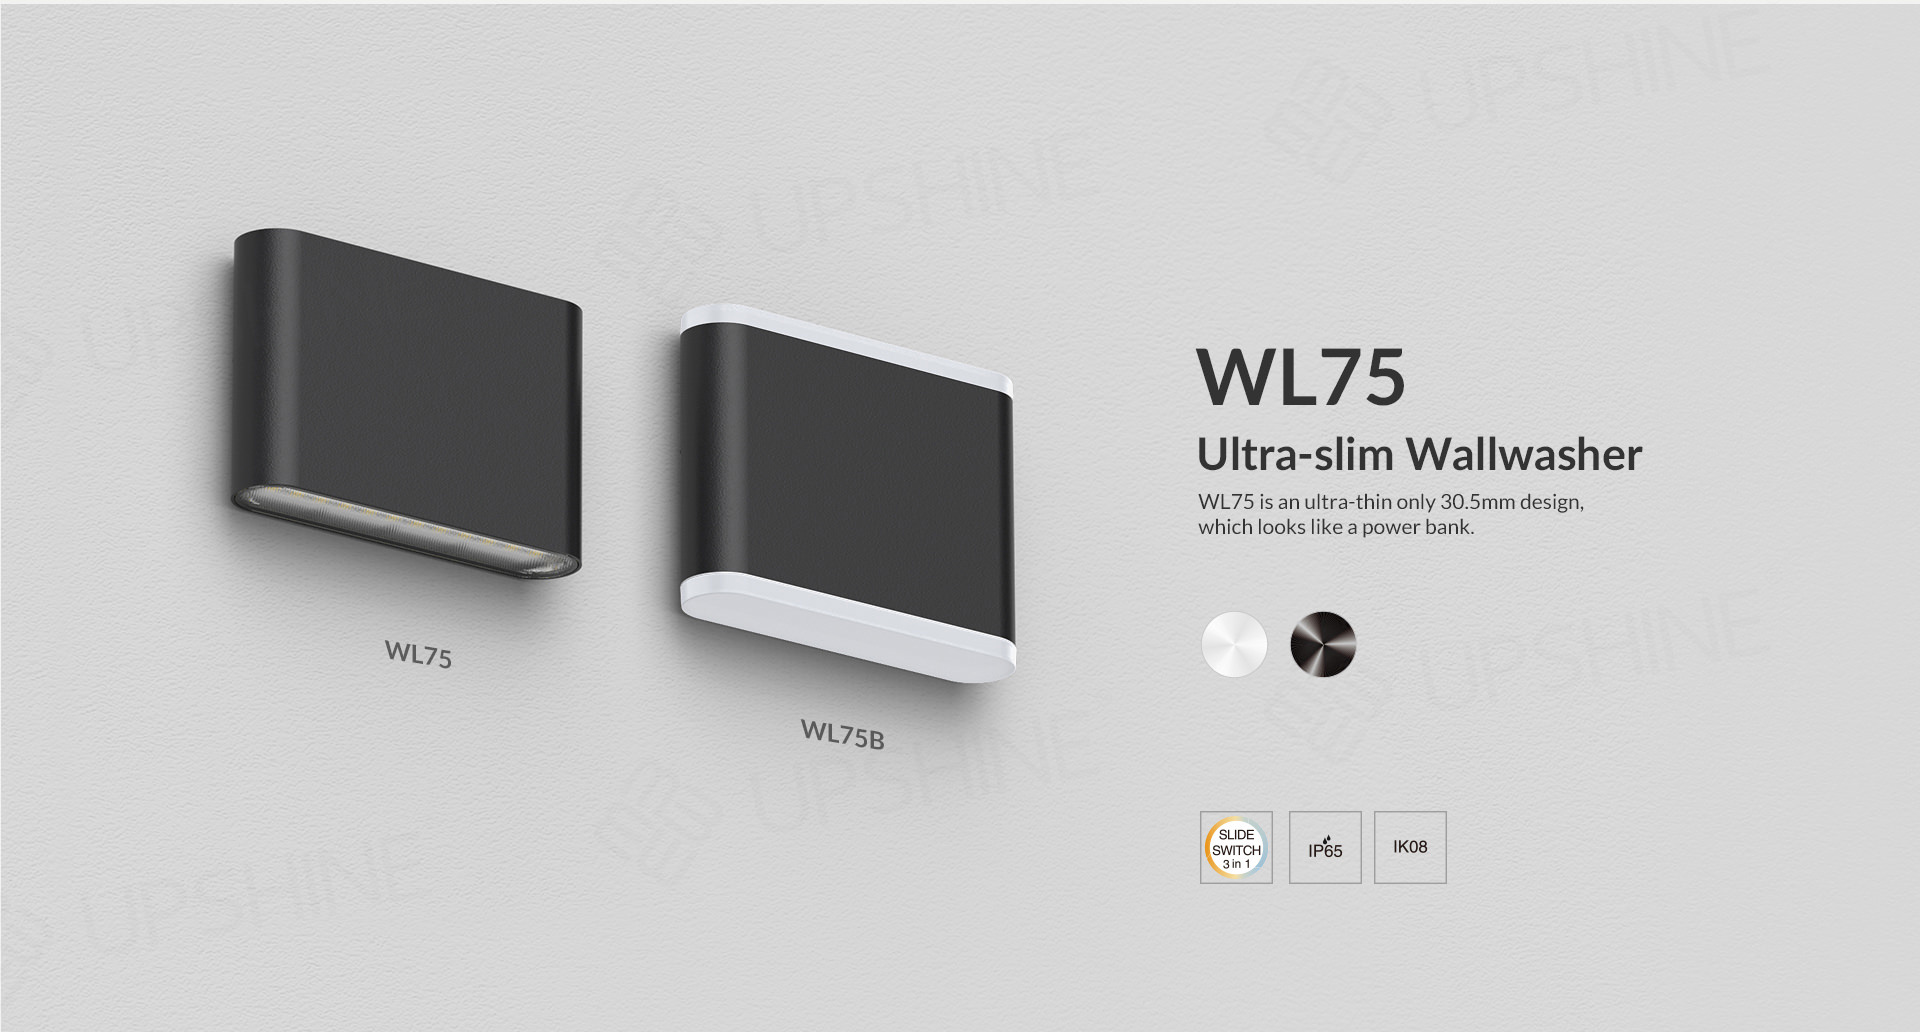 WL75_01utral slim wallwasher